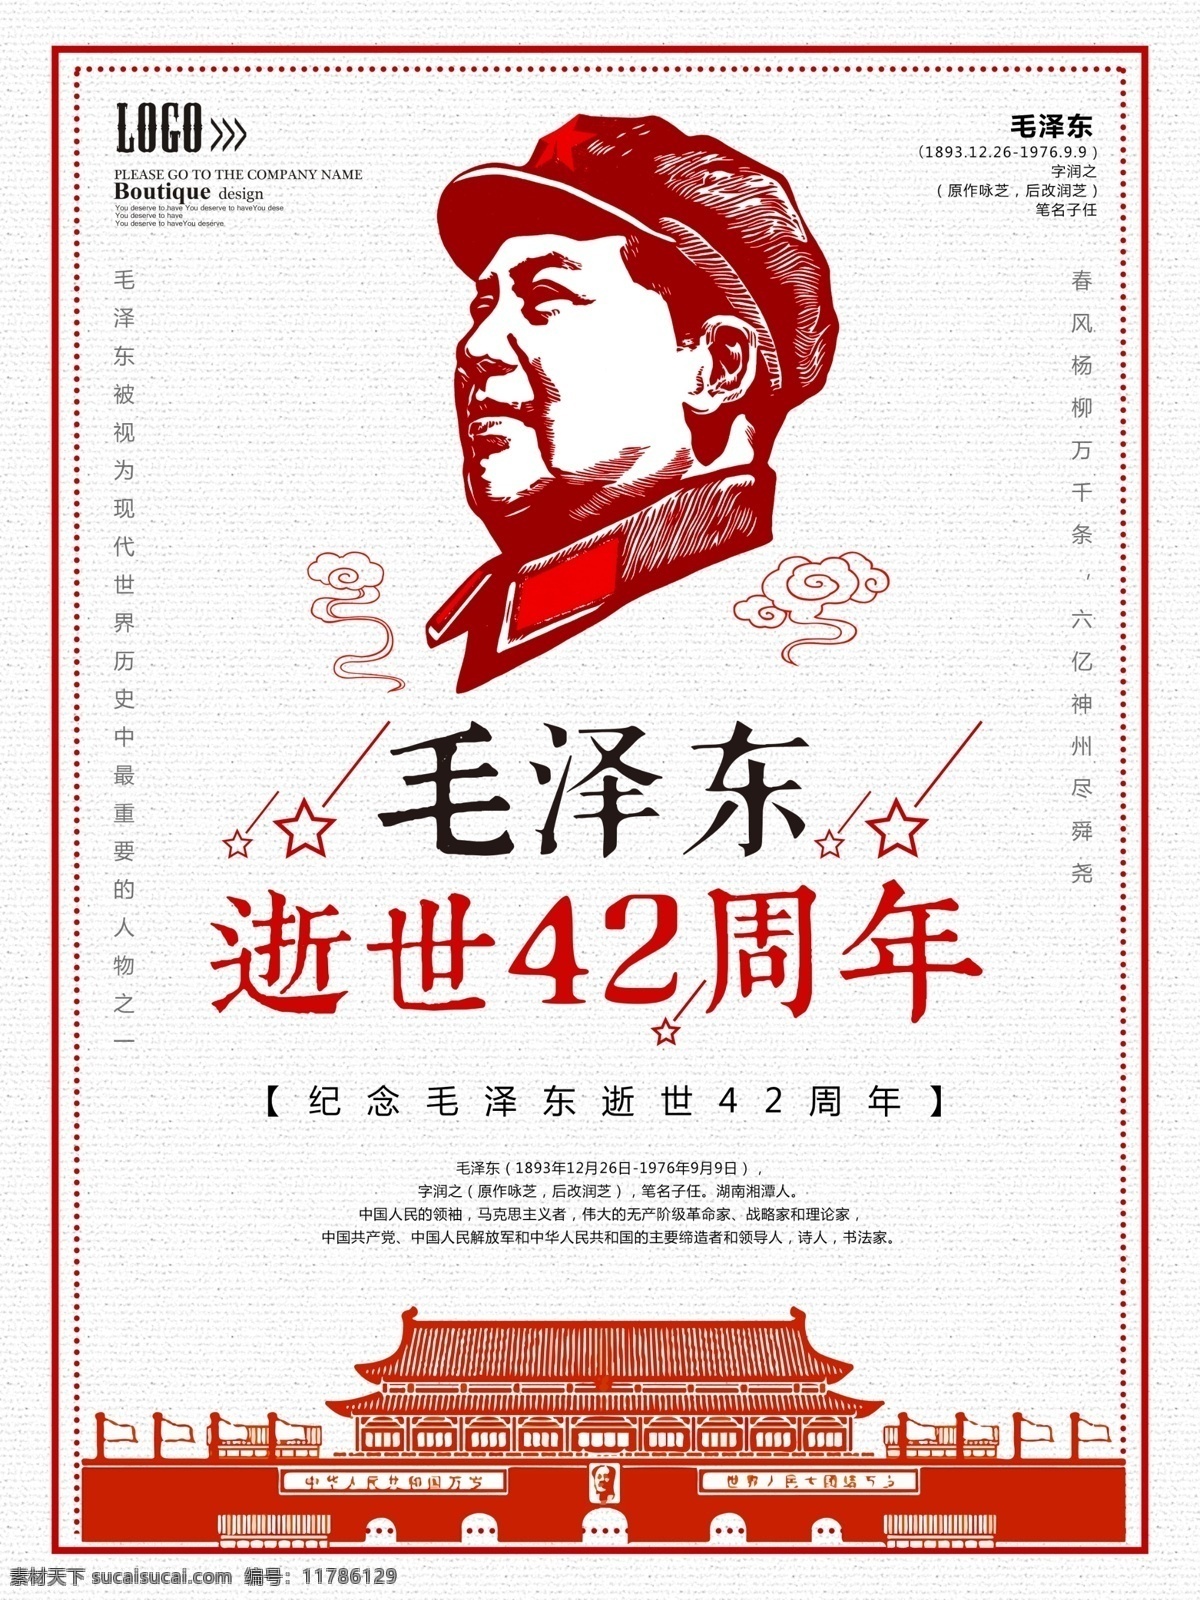 毛泽东 逝世 周年纪念 海报 毛主席 东方红 纪念毛泽东 中国梦 伟大领袖 一代伟人 领袖的风采 毛主席诞辰 毛 主席 周年 永垂不朽 伟人挂画 领袖人物